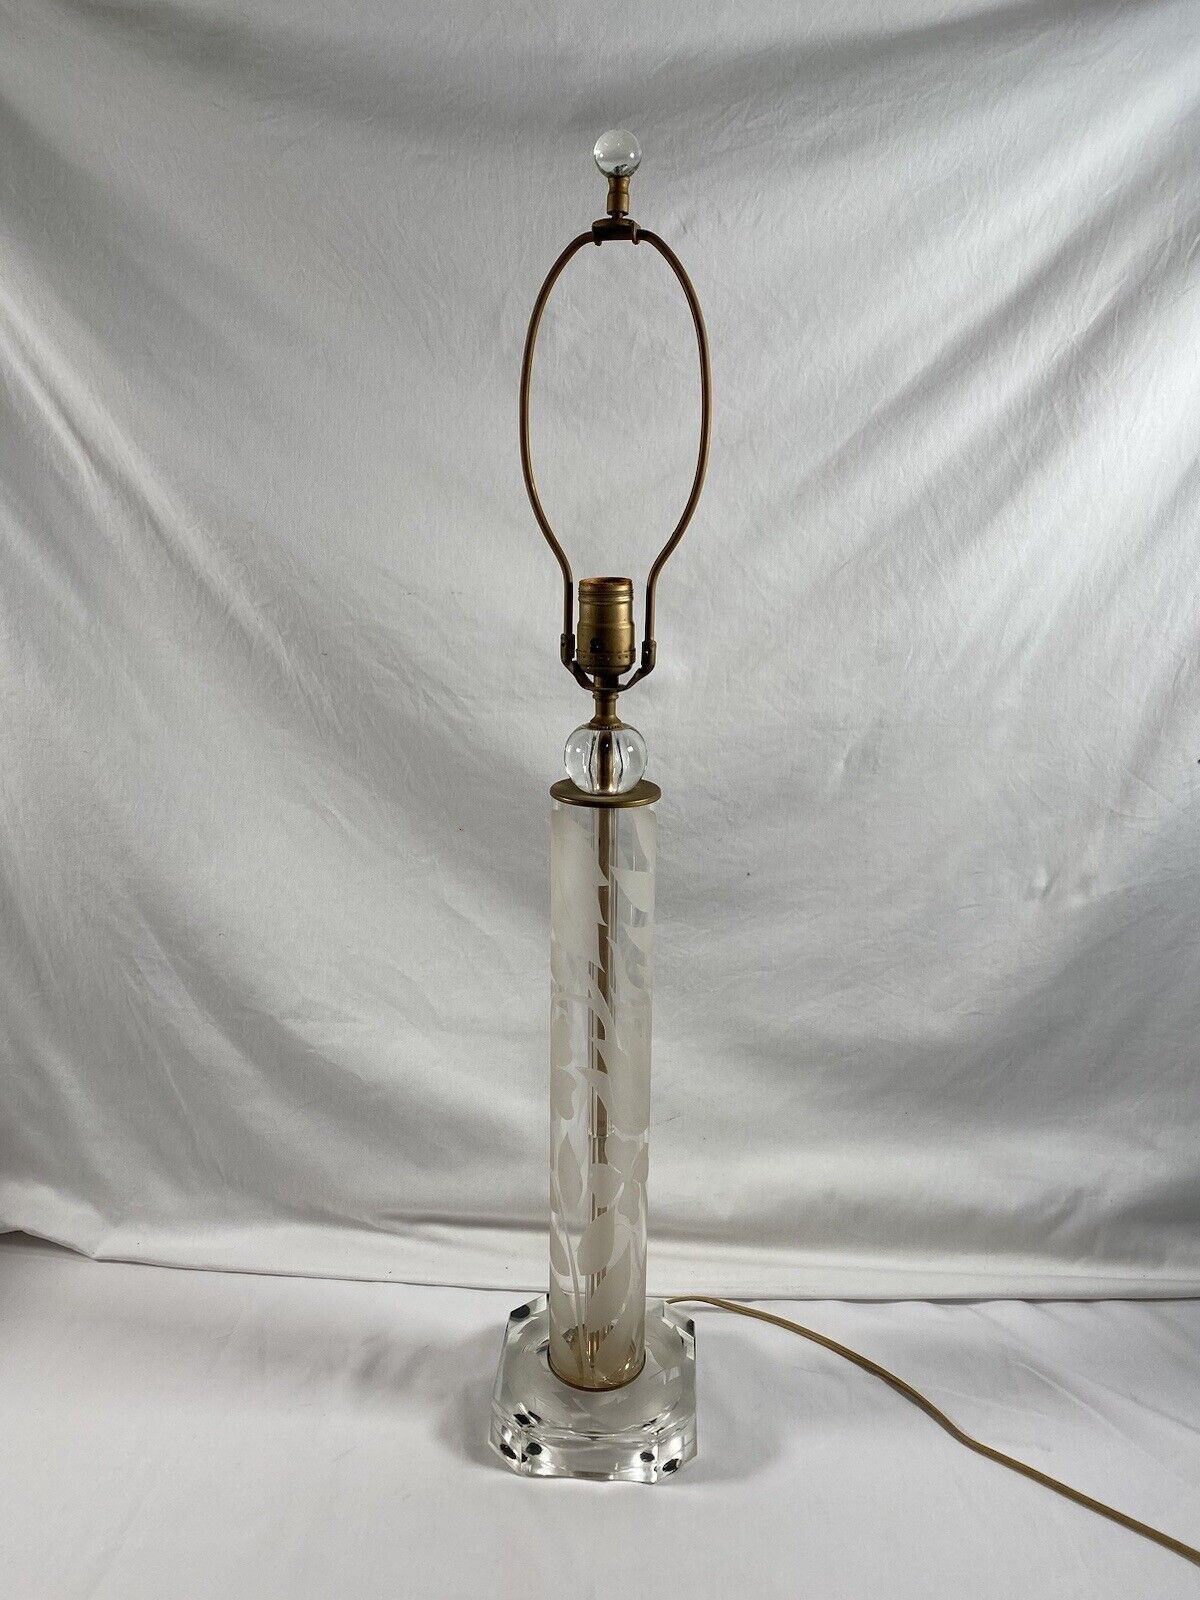 Vintage Etched Floral Crystal Glass Columnar Lamp Tested Working #2